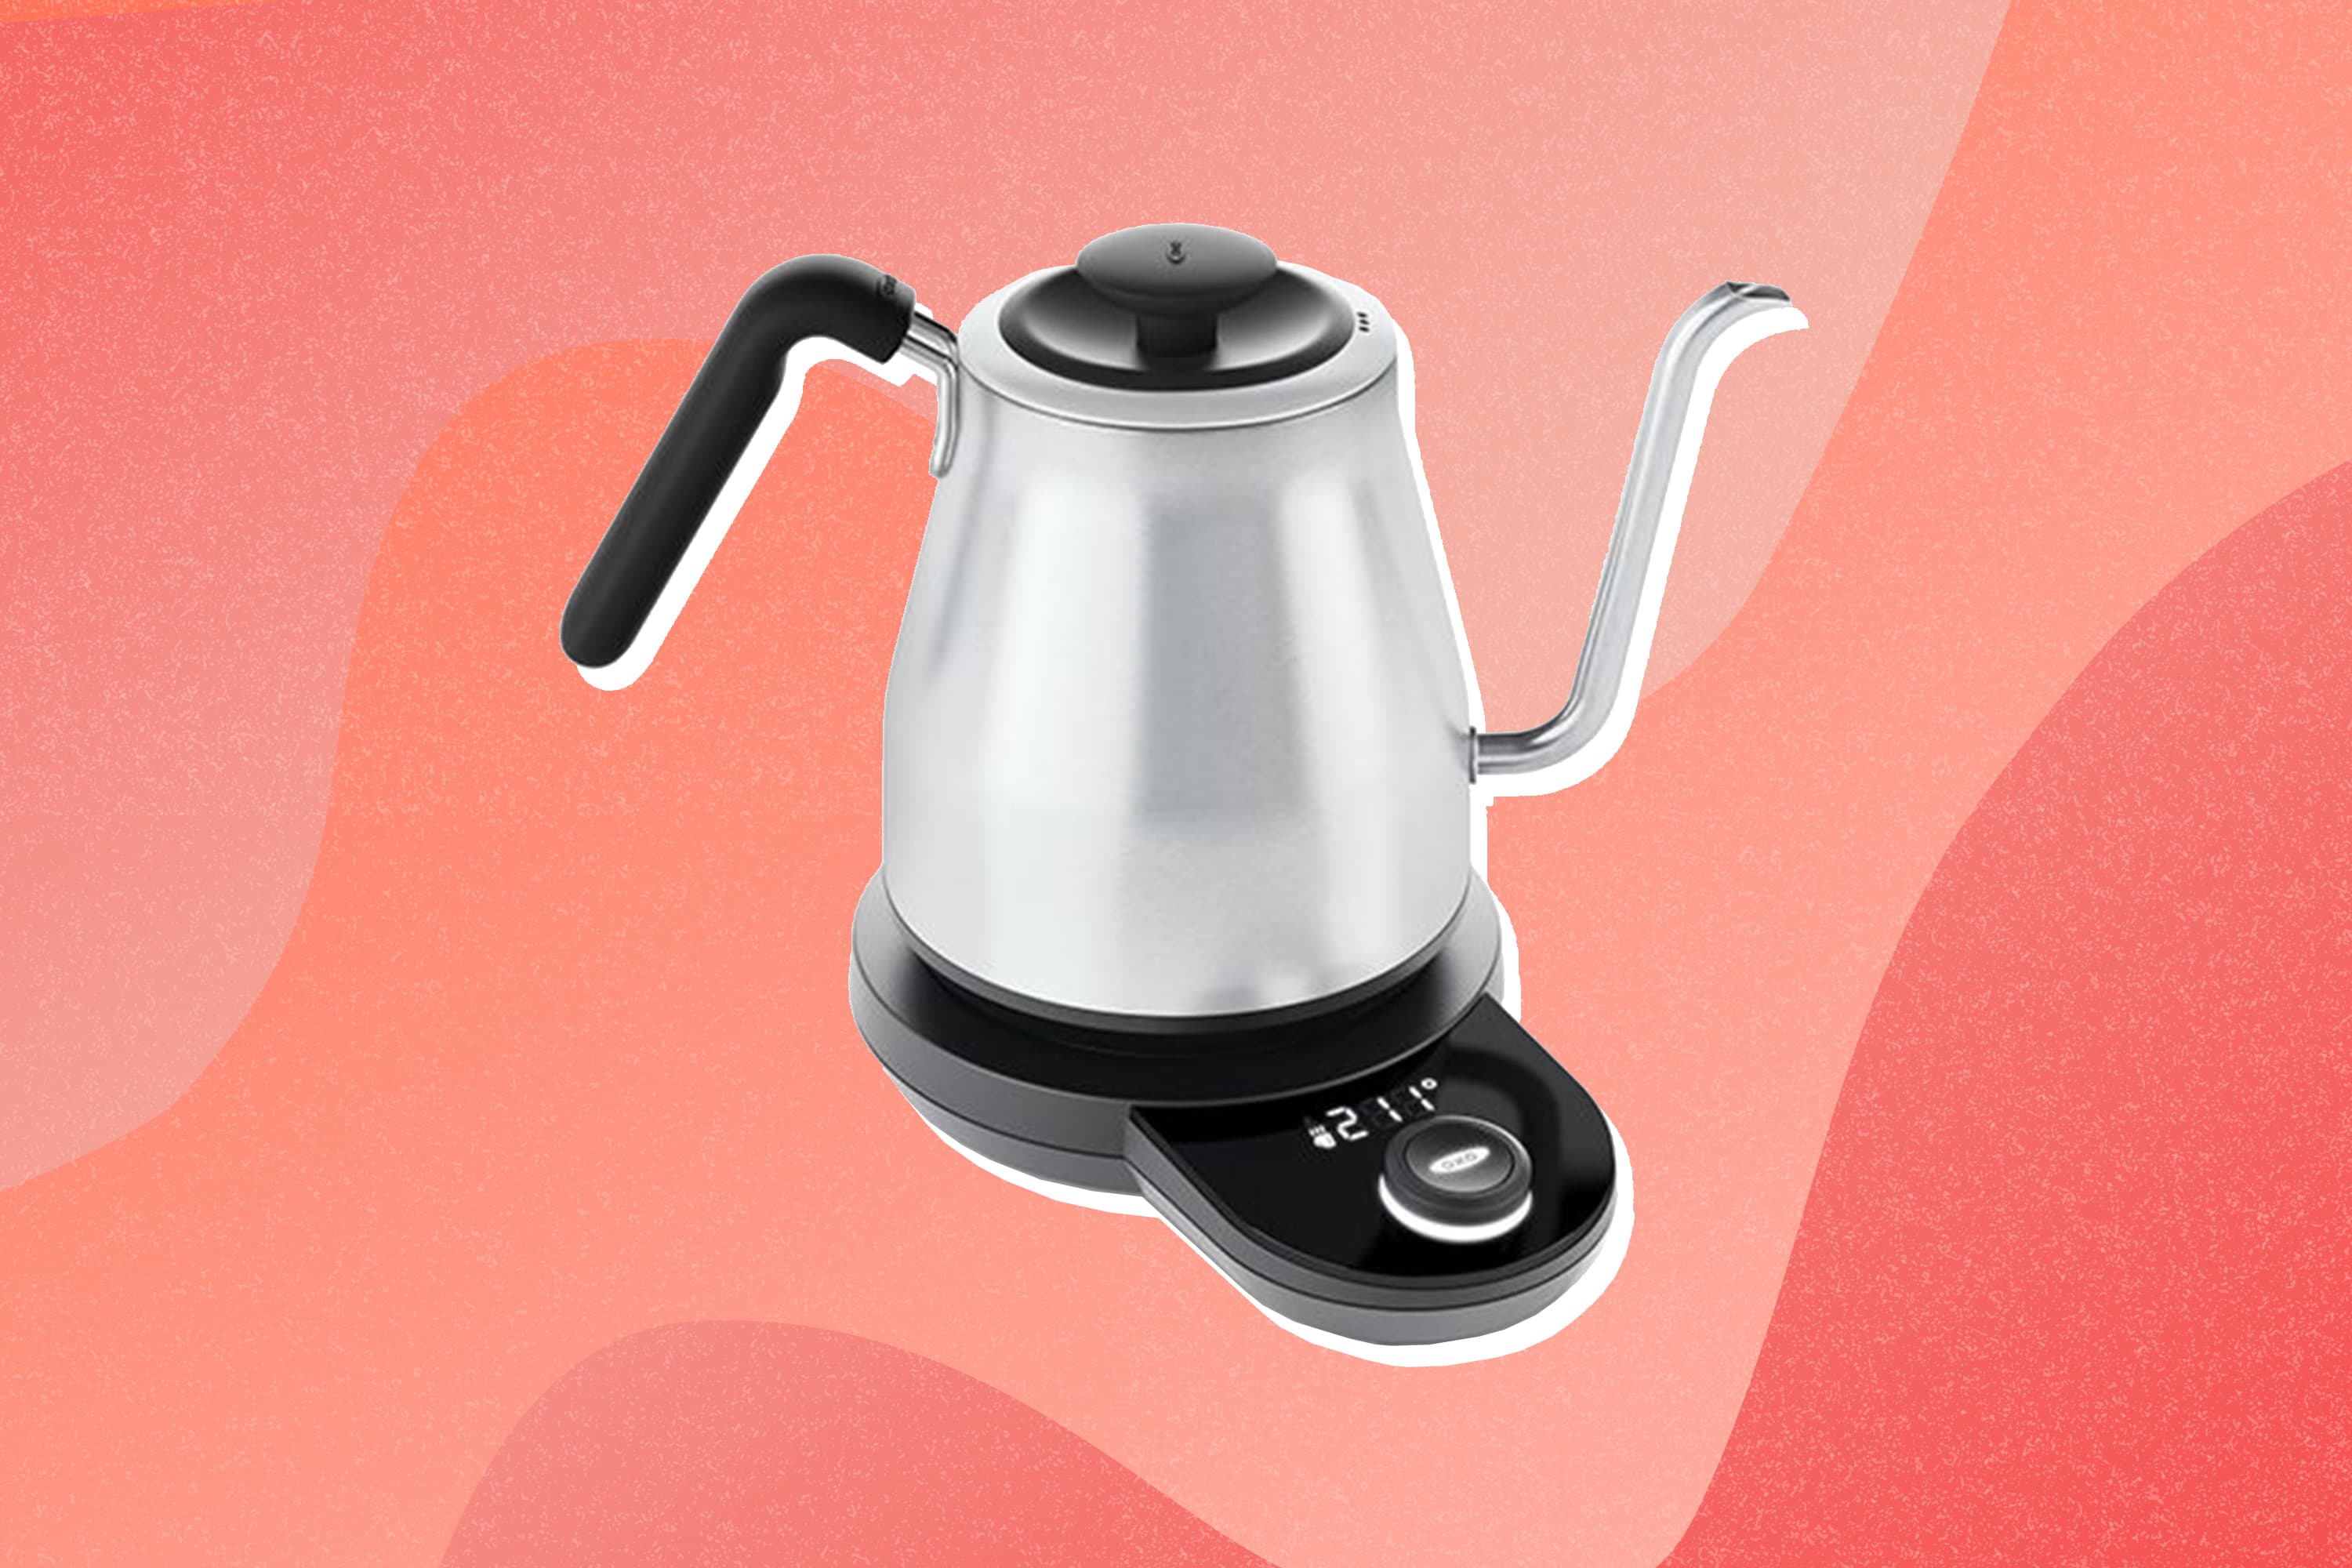 https://cdn.apartmenttherapy.info/image/upload/v1605882980/k/Design/2020-11/dotd-november/dotd-tea-kettle-oxo.jpg